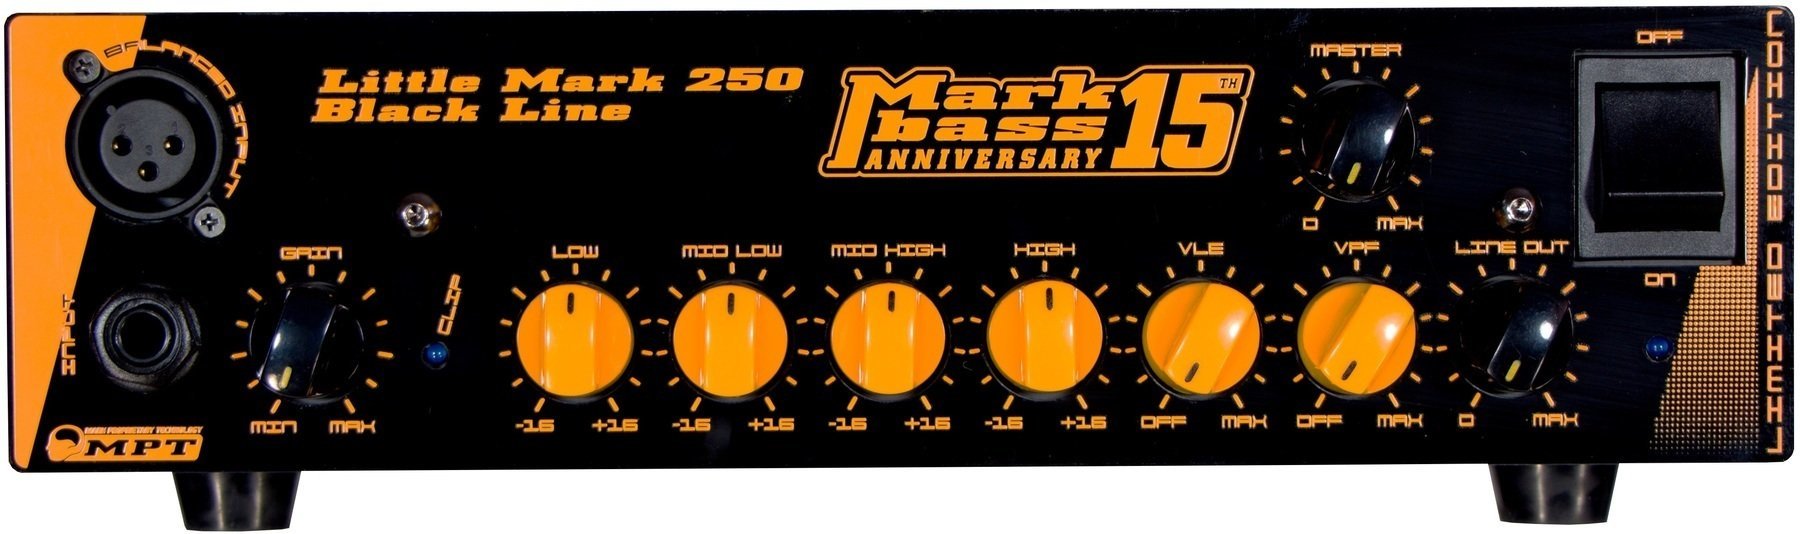 Tranzistorový basový zesilovač Markbass Little Mark 250 BK Line Anniversary 15